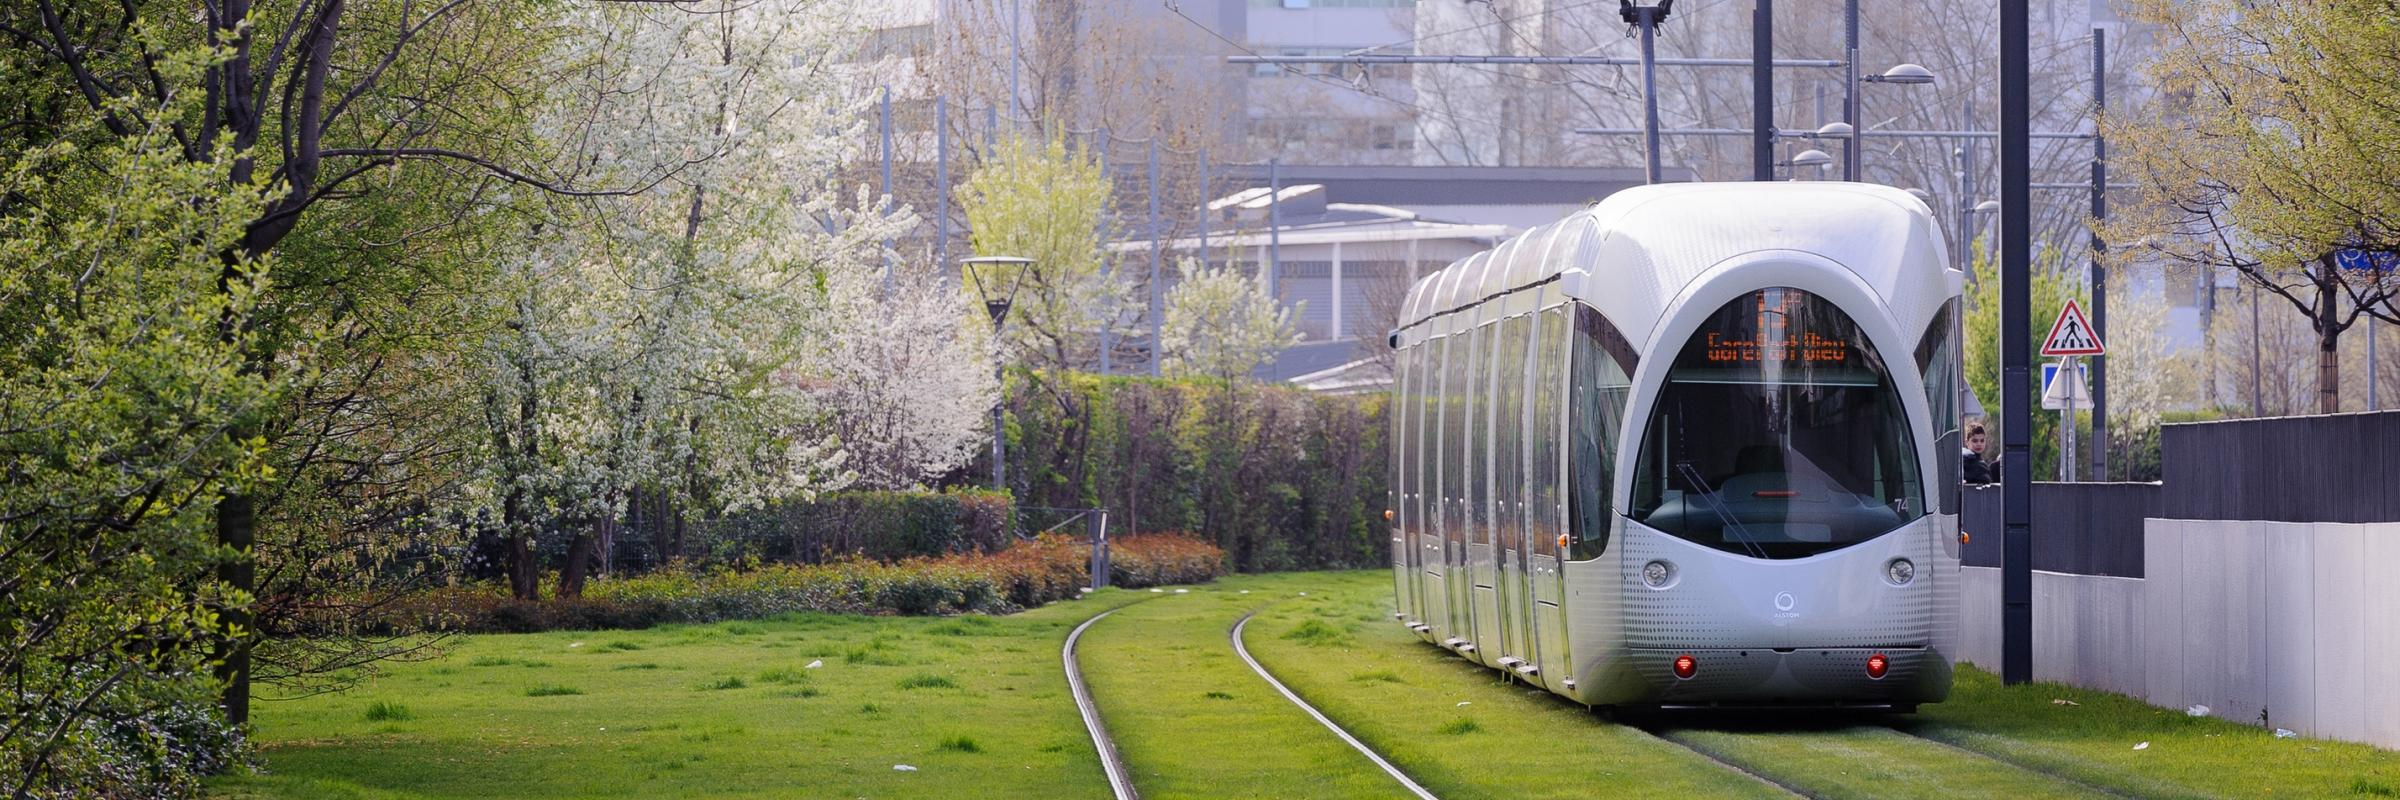 Le tramway : une solution durable pour réduire les émissions de dioxyde de carbone en ville.